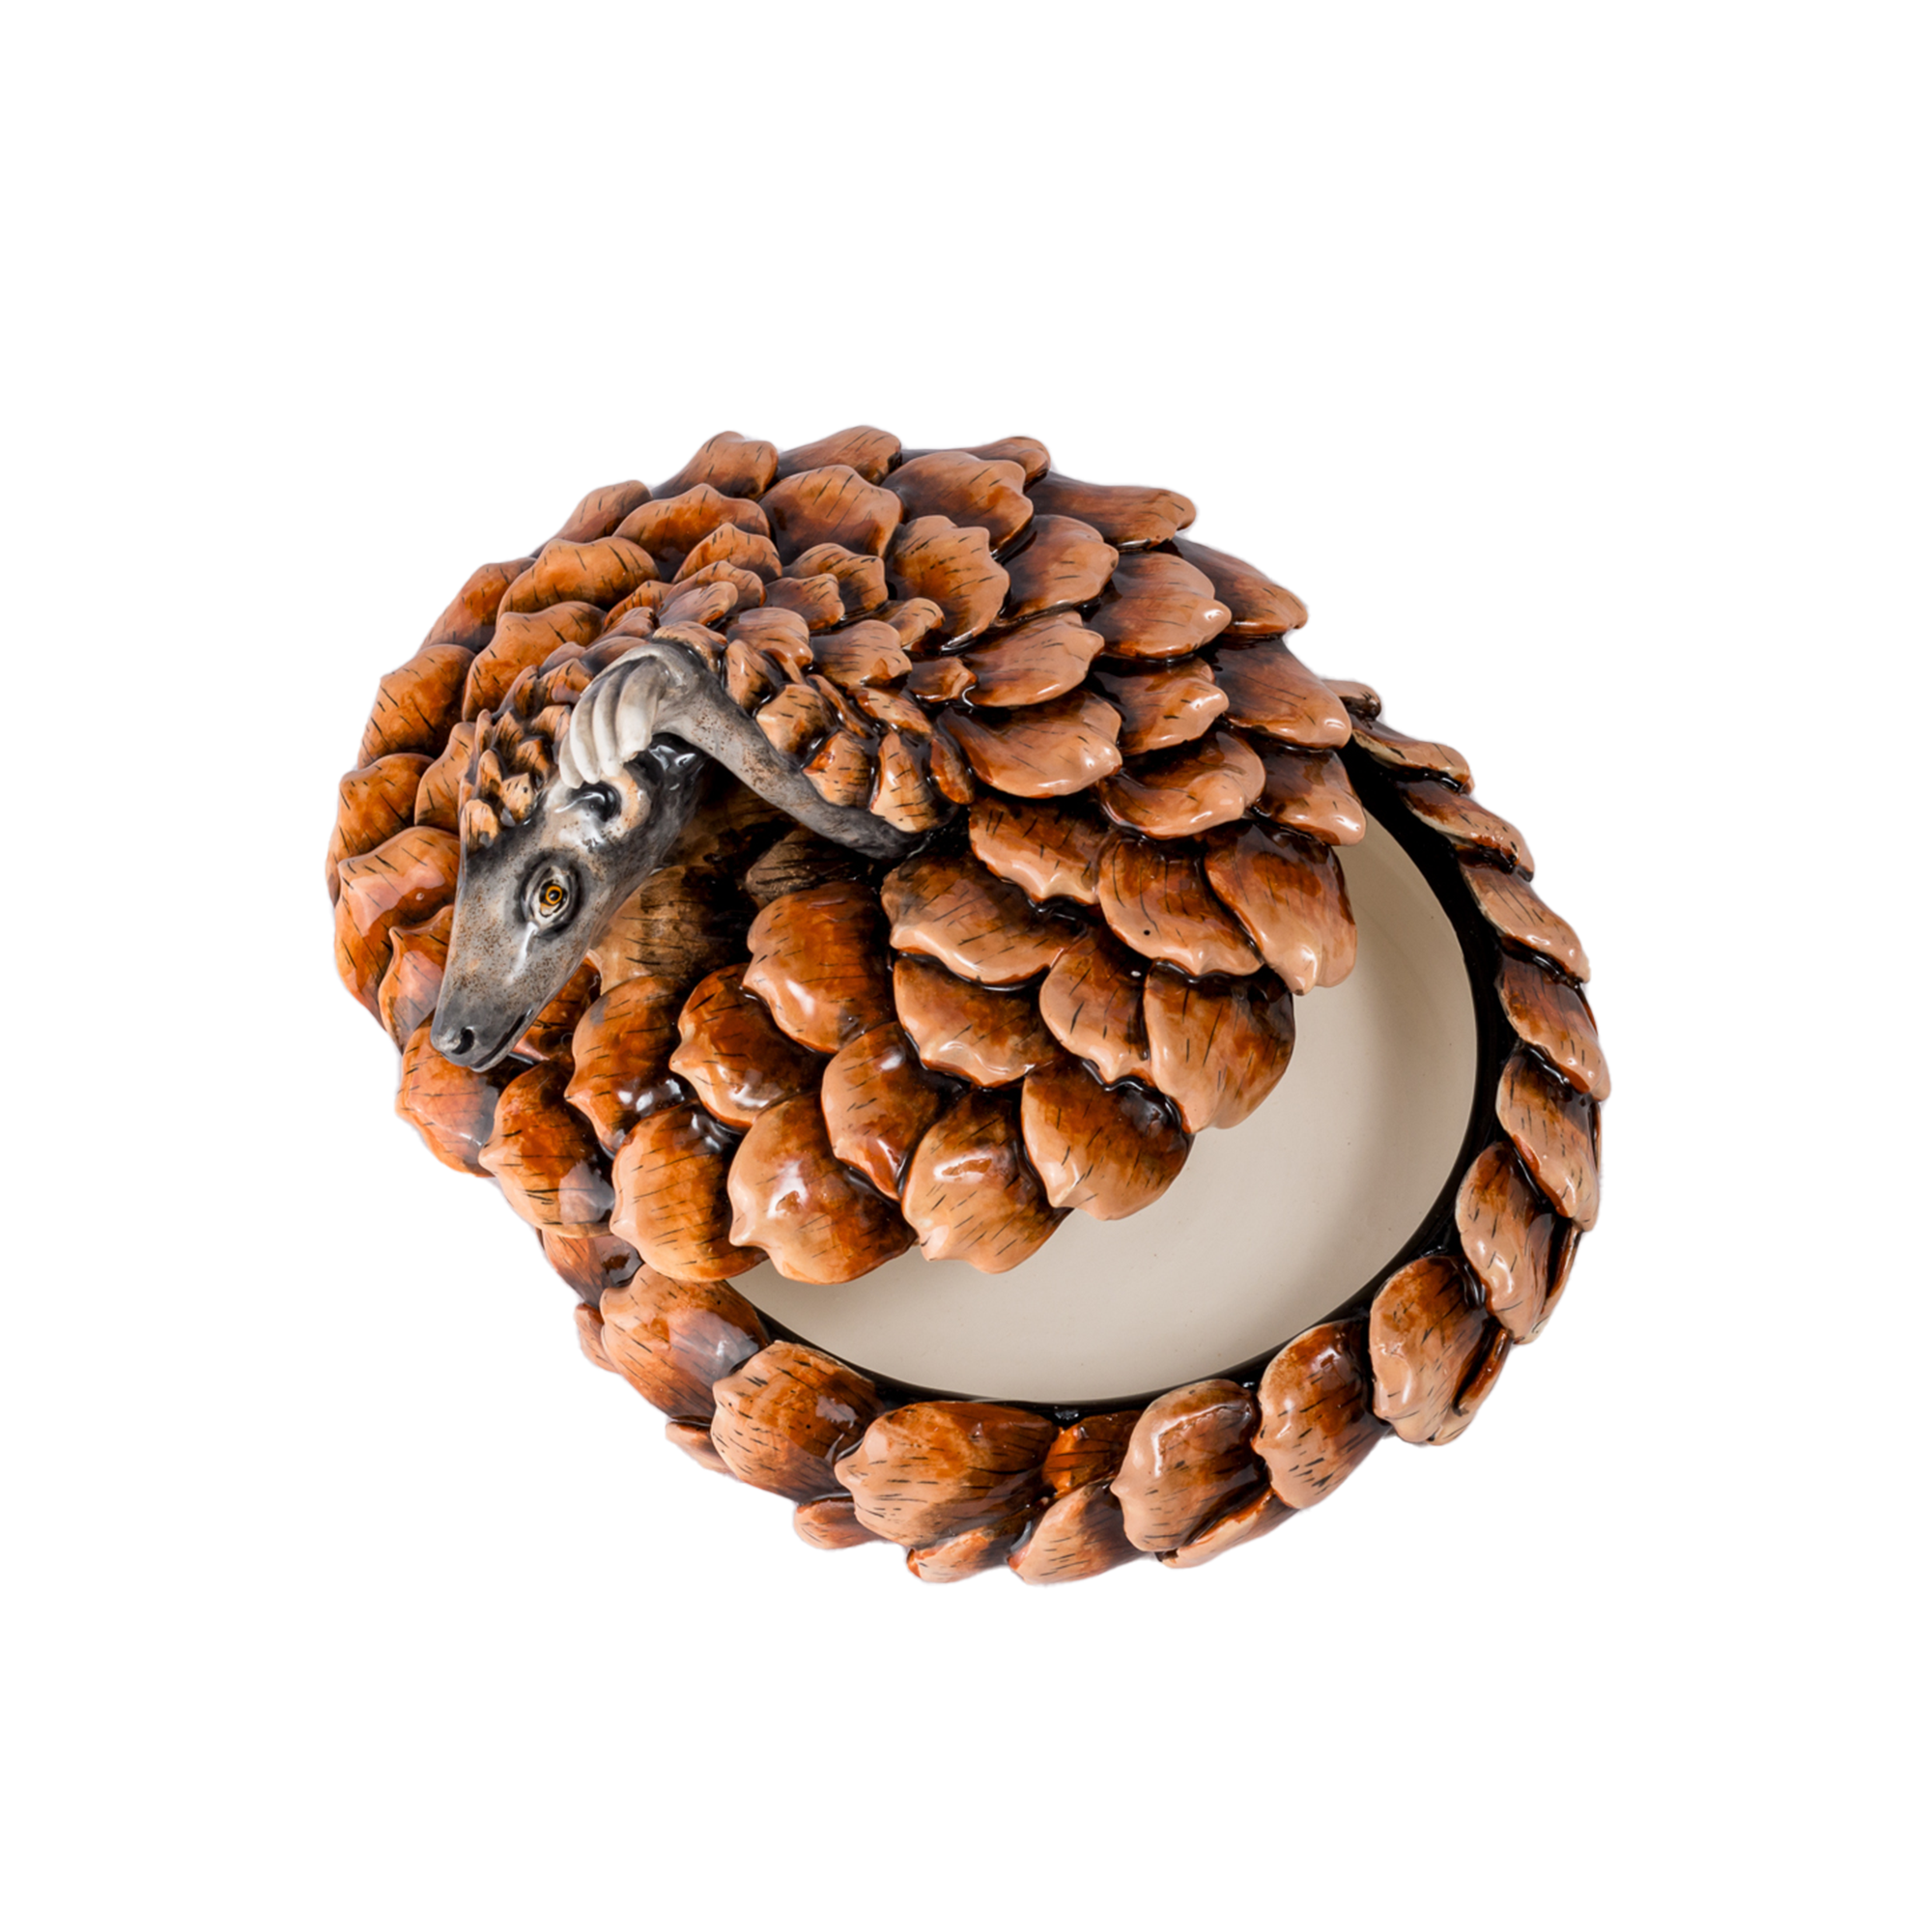 3D Ceramic Pangolin Jewellry Box